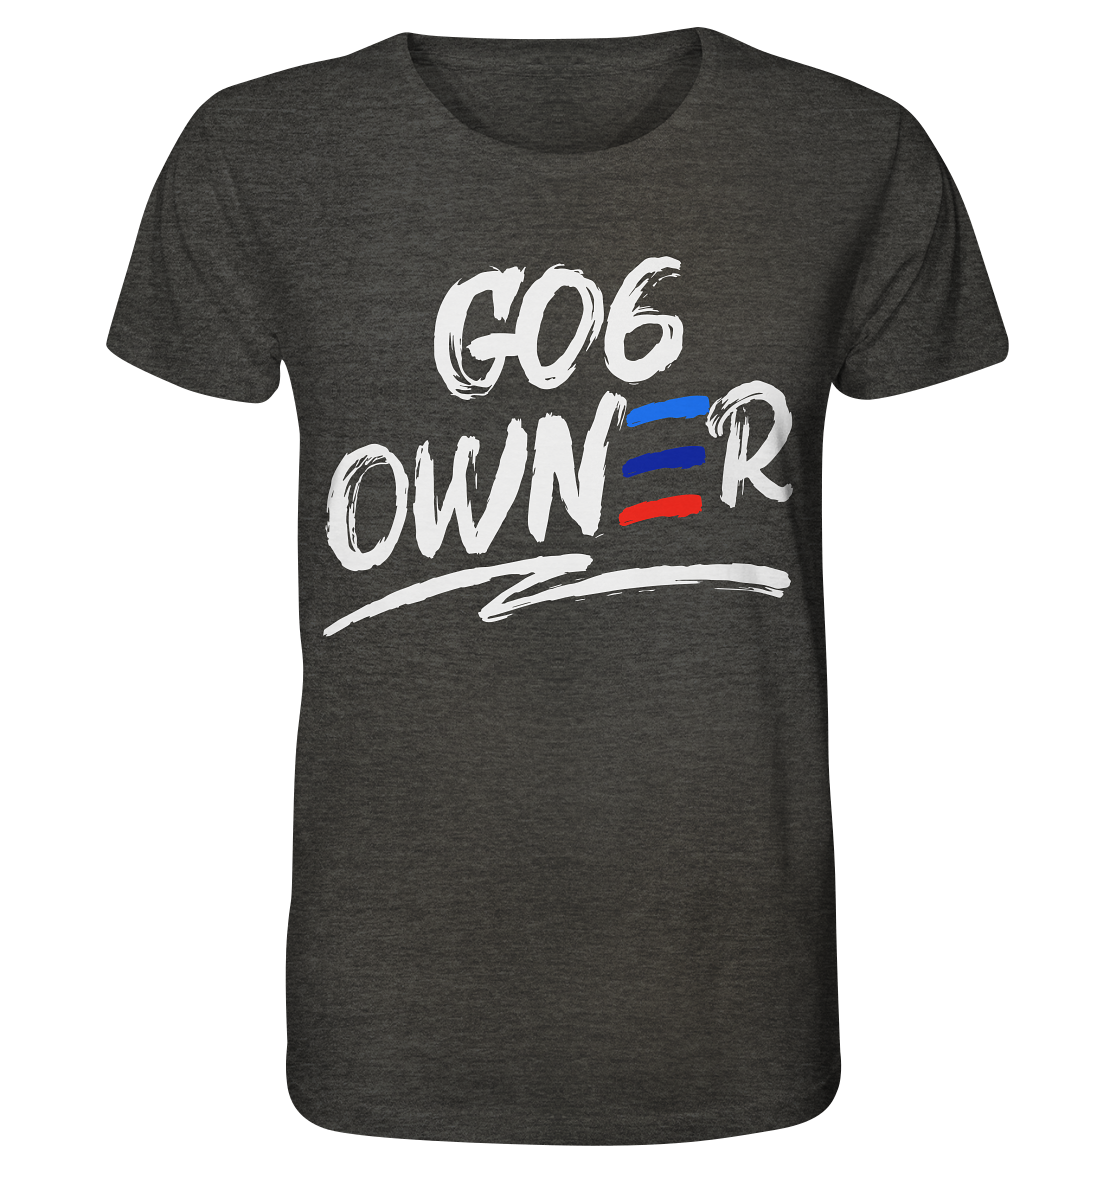 COD_BGKG06OWNER - Organic Shirt (meliert)